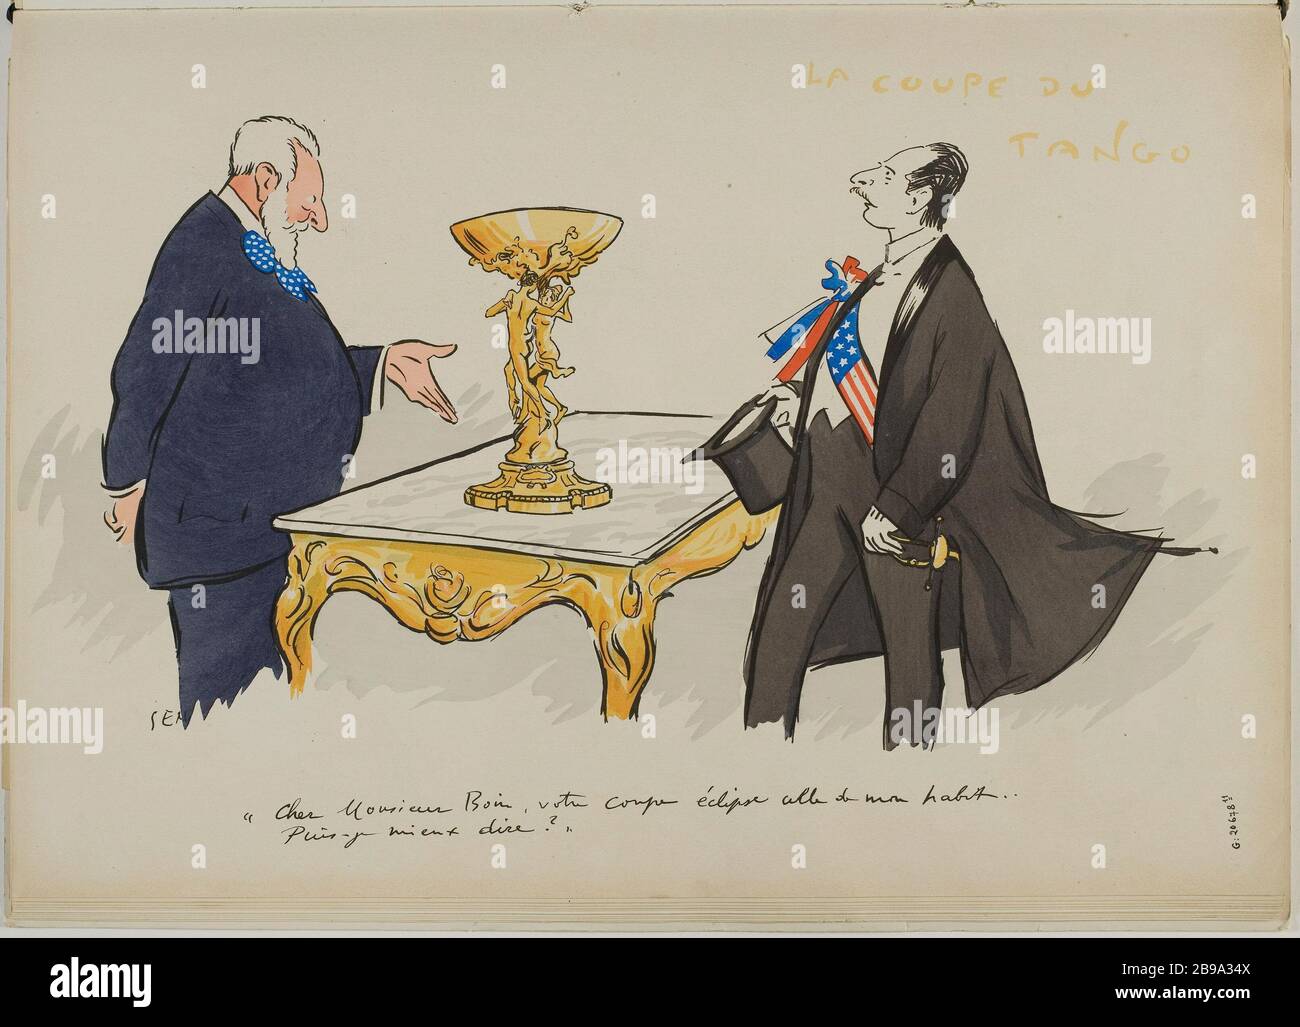 ALBUM TANGOVILLE-SUR-MER - CUP TANGO: A CUT ON A TABLE GOLDEN THRONE BETWEEN MR BOIN, ANTIQUE AND ANDRE DE FOUQUIERE, arbiter of elegance; 'DEAR SIR BOIN YOUR ECLIPSE COUPE THAT OF MY SUIT ... Sem (Georges Goursat, dit - 1863-1934)/Jean Saudé. 'Album Tangoville-sur-mer - la coupe du tango: une coupe dorée sur une table trône entre Monsieur Boin, antiquaire et André de Fouquière, arbitre des élégances ; 'cher Monsieur Boin, votre coupe éclipse celle de mon habit...''. Lithographie en couleur. Paris, musée Carnavalet. Stock Photo